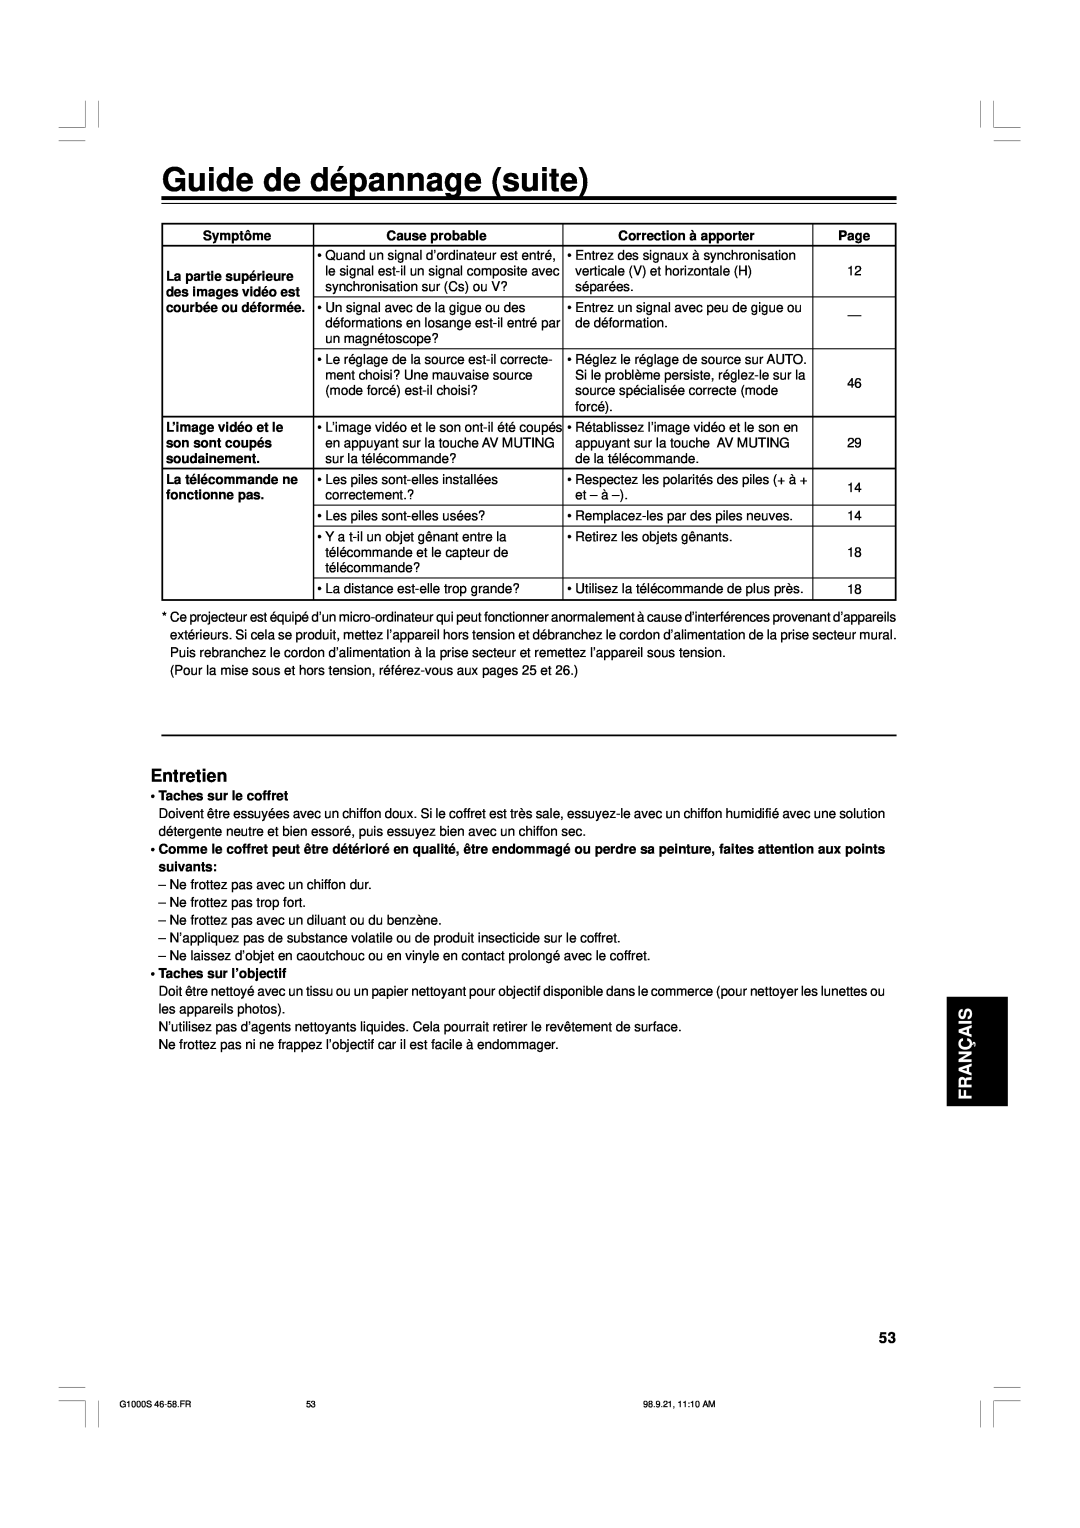 JVC G1000S manual Guide de dépannage suite, Entretien, Français, Symptôme, Cause probable, Correction à apporter, Page 